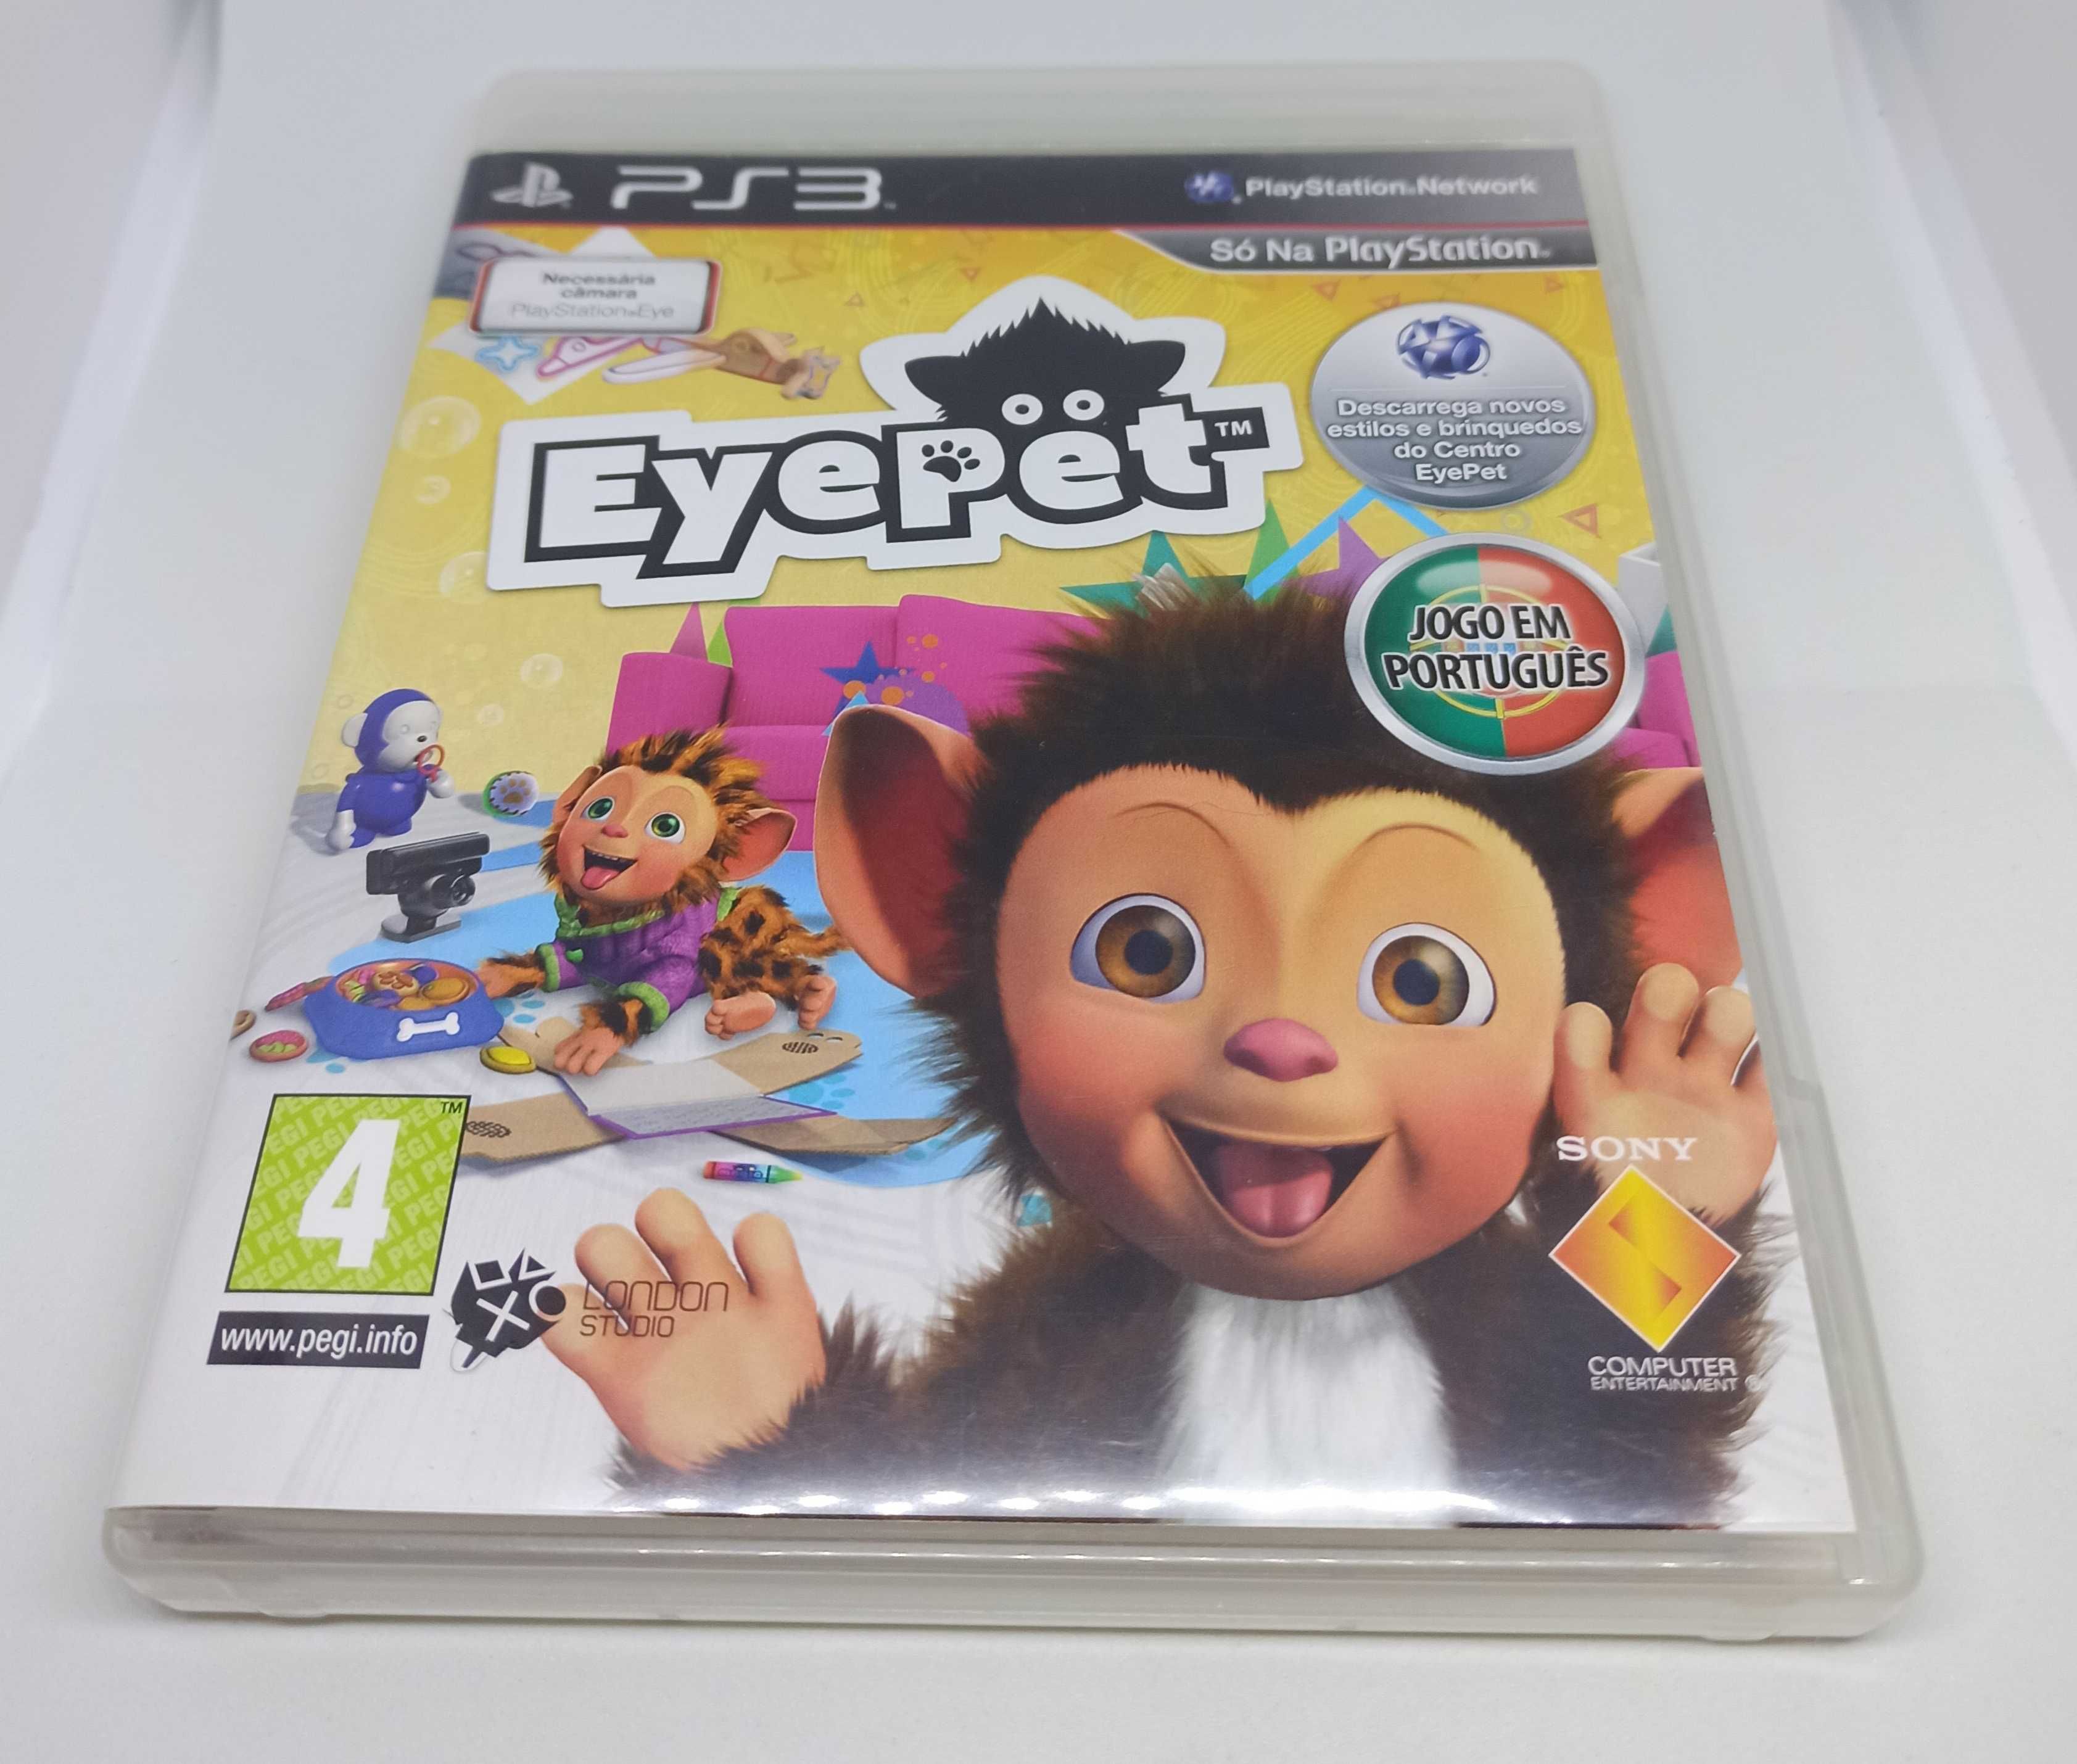 EyePet + Camara EyeToy - PS3 - Portes Grátis